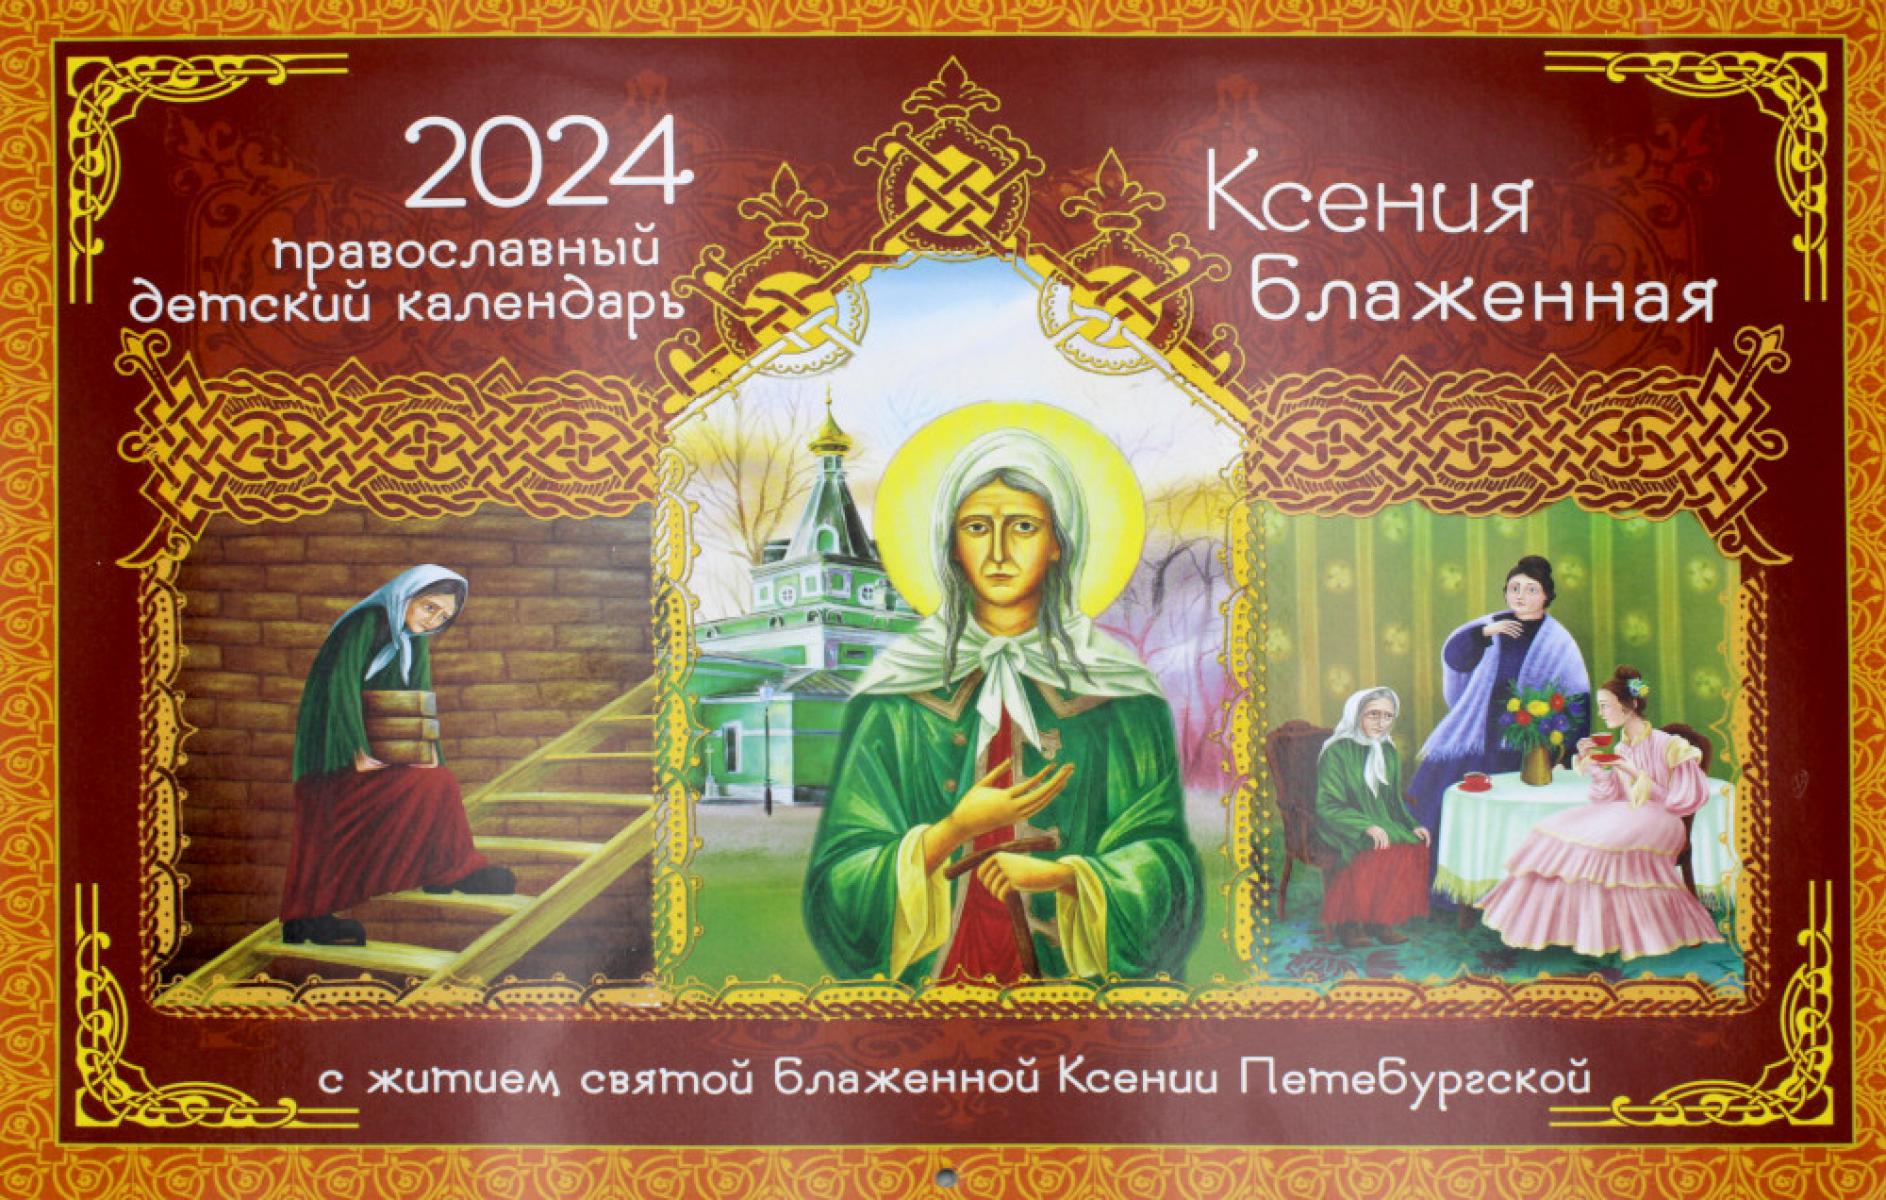 Ксения Блаженная. С житием святой блаженной Ксении Петербургской. Православный детский календарь на 2024 год (перекидной)